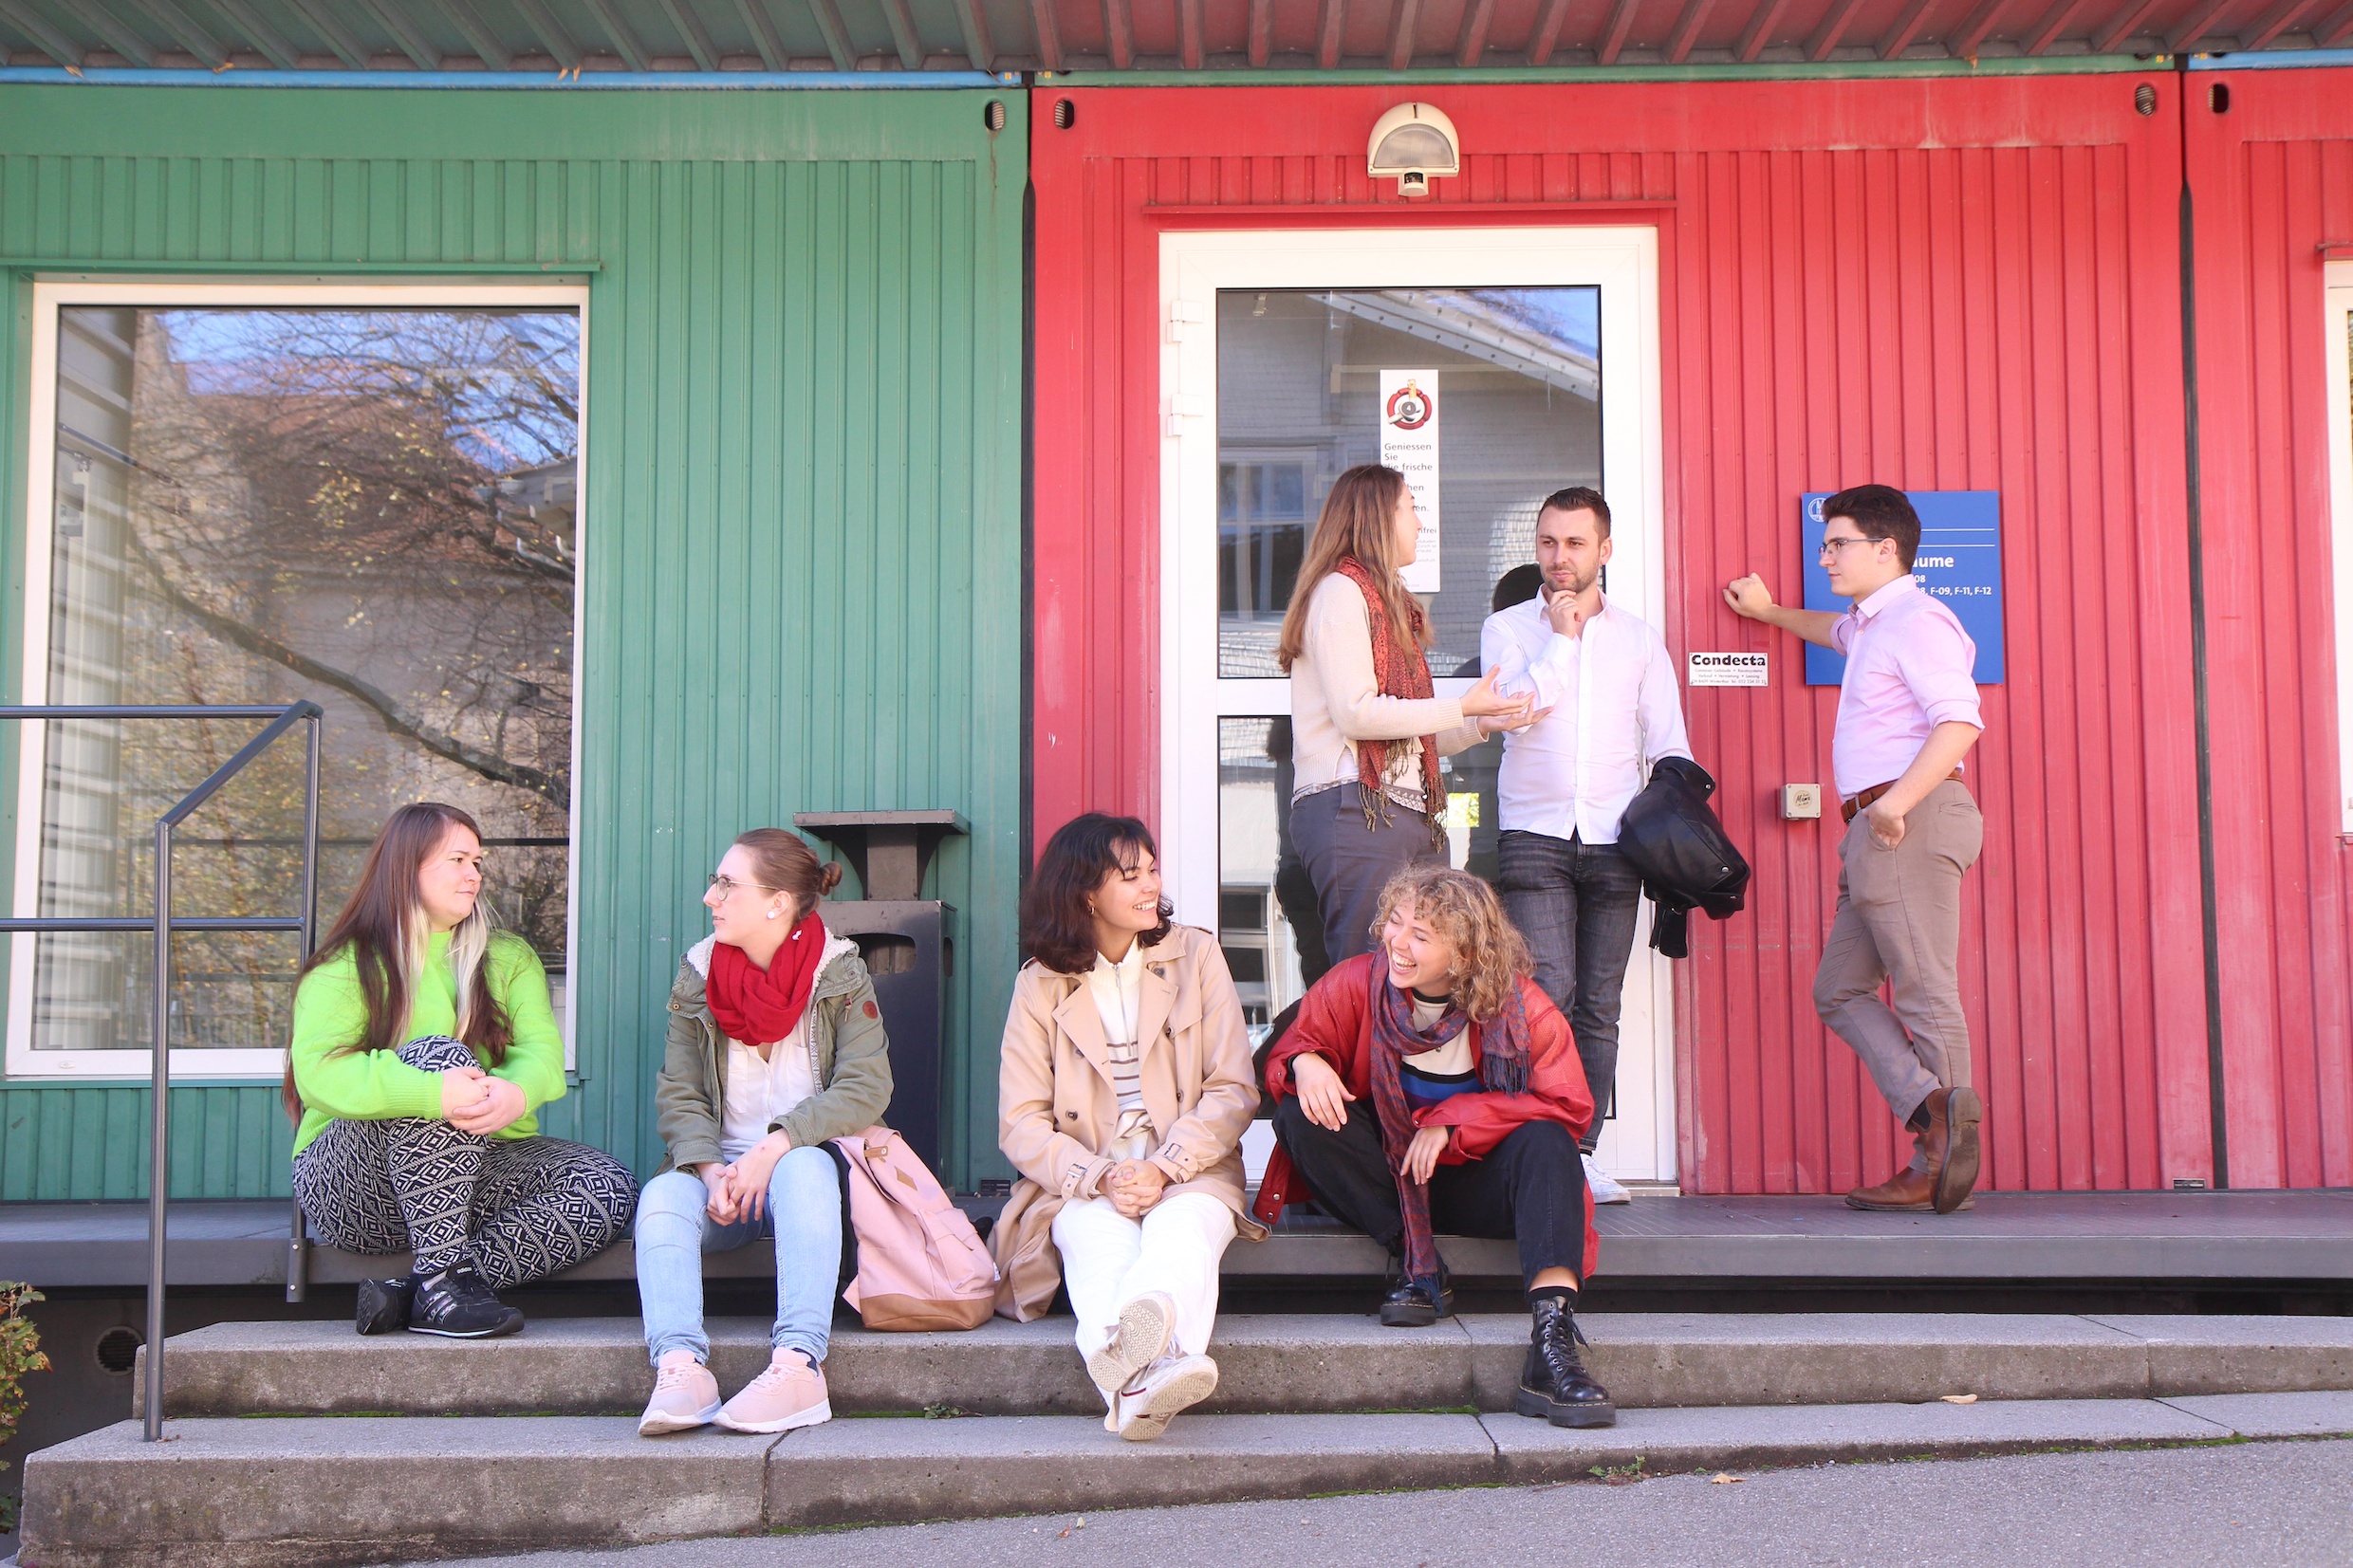 Das Bild zeigt eine Gruppe von Studierenden, die vor einem grün-roten Gebäude der Universität lebhaft diskutieren.